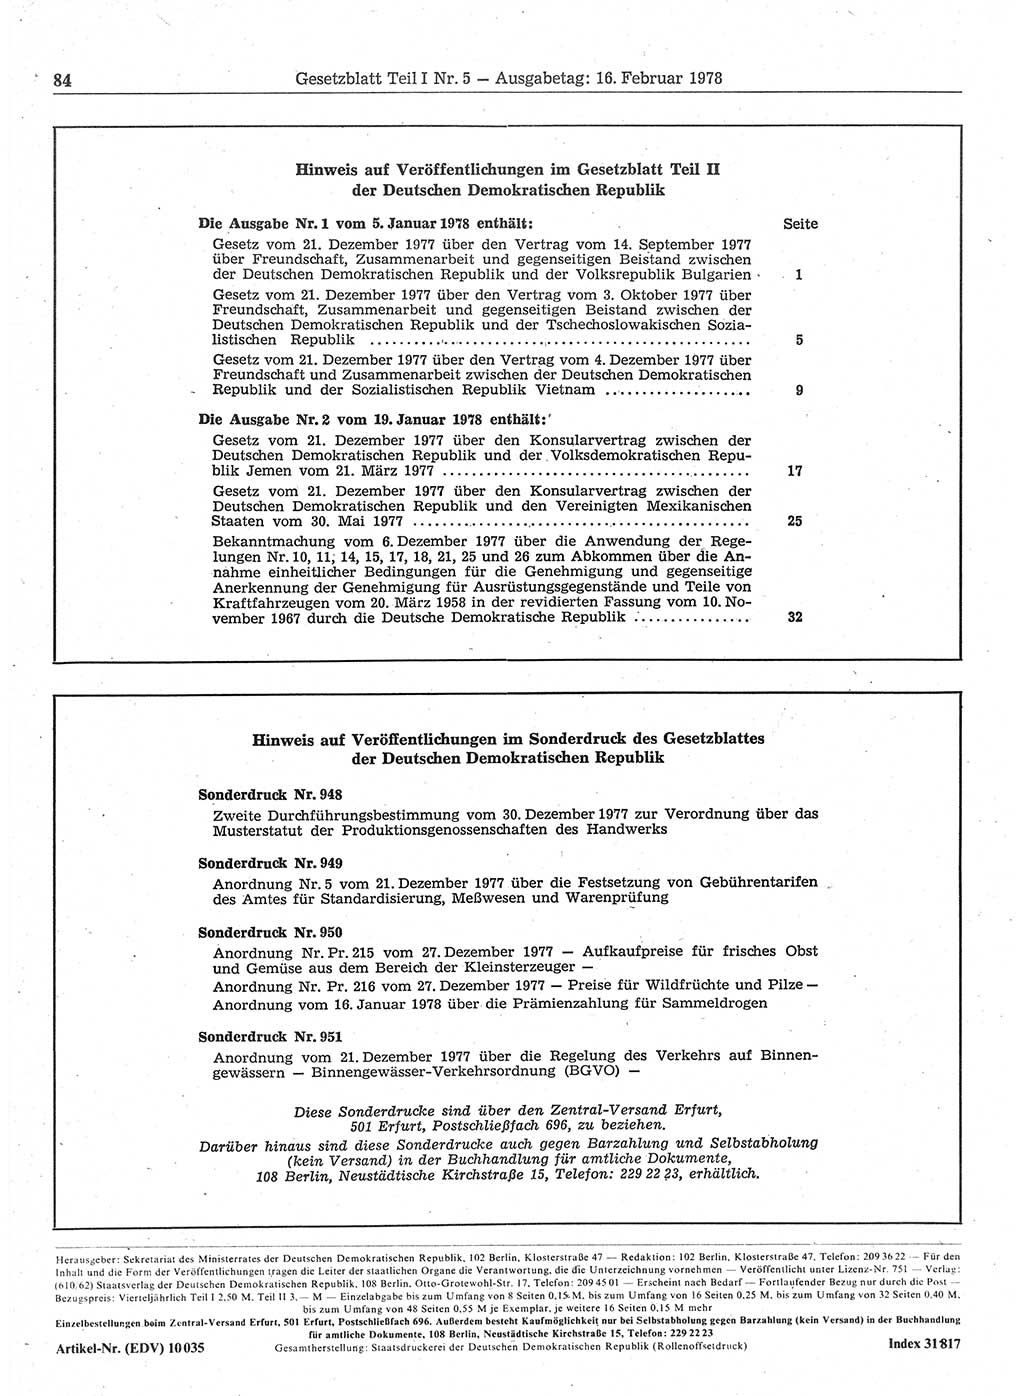 Gesetzblatt (GBl.) der Deutschen Demokratischen Republik (DDR) Teil Ⅰ 1978, Seite 84 (GBl. DDR Ⅰ 1978, S. 84)